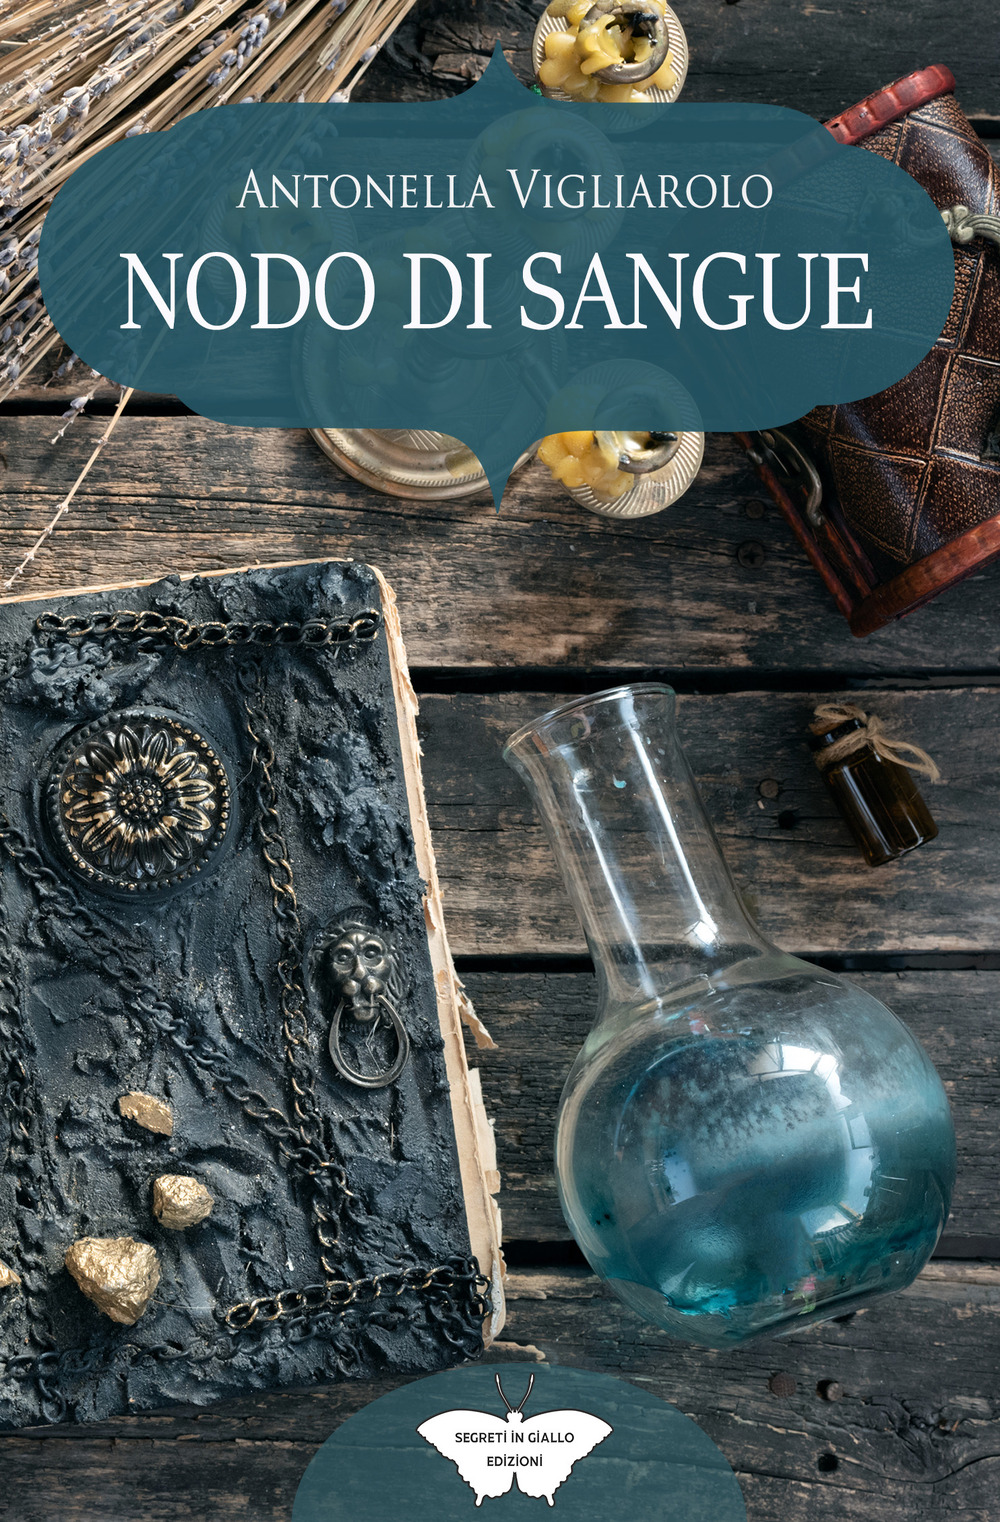 Libri Vigliarolo Antonella - Nodo Di Sangue NUOVO SIGILLATO, EDIZIONE DEL 19/05/2021 SUBITO DISPONIBILE